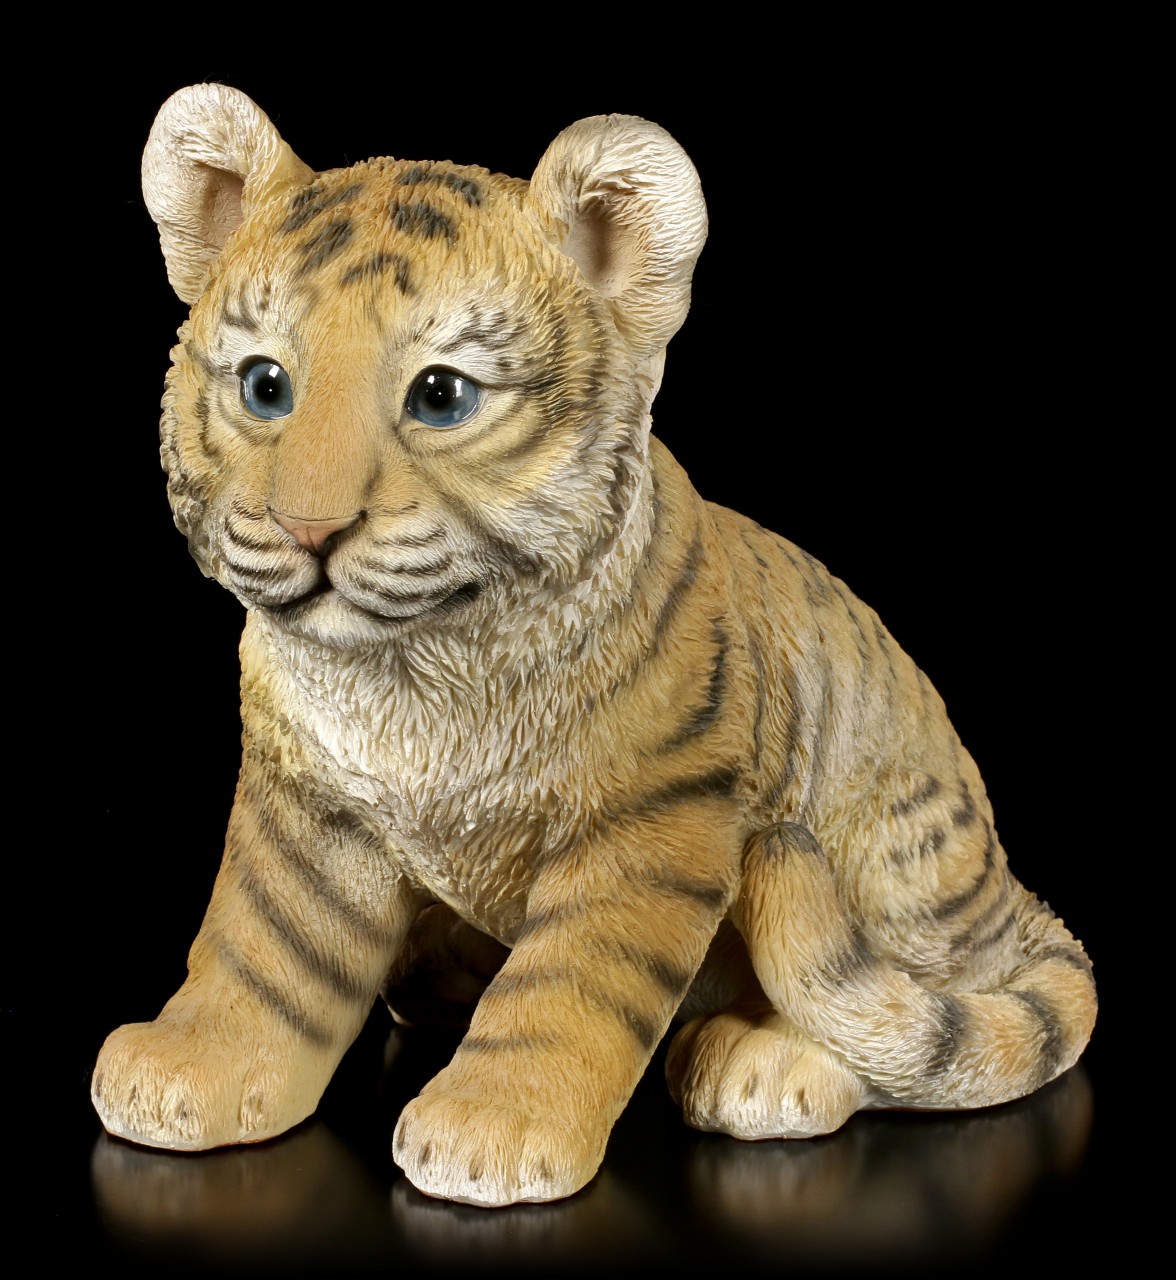 Garden Figurine - Little Baby Tiger